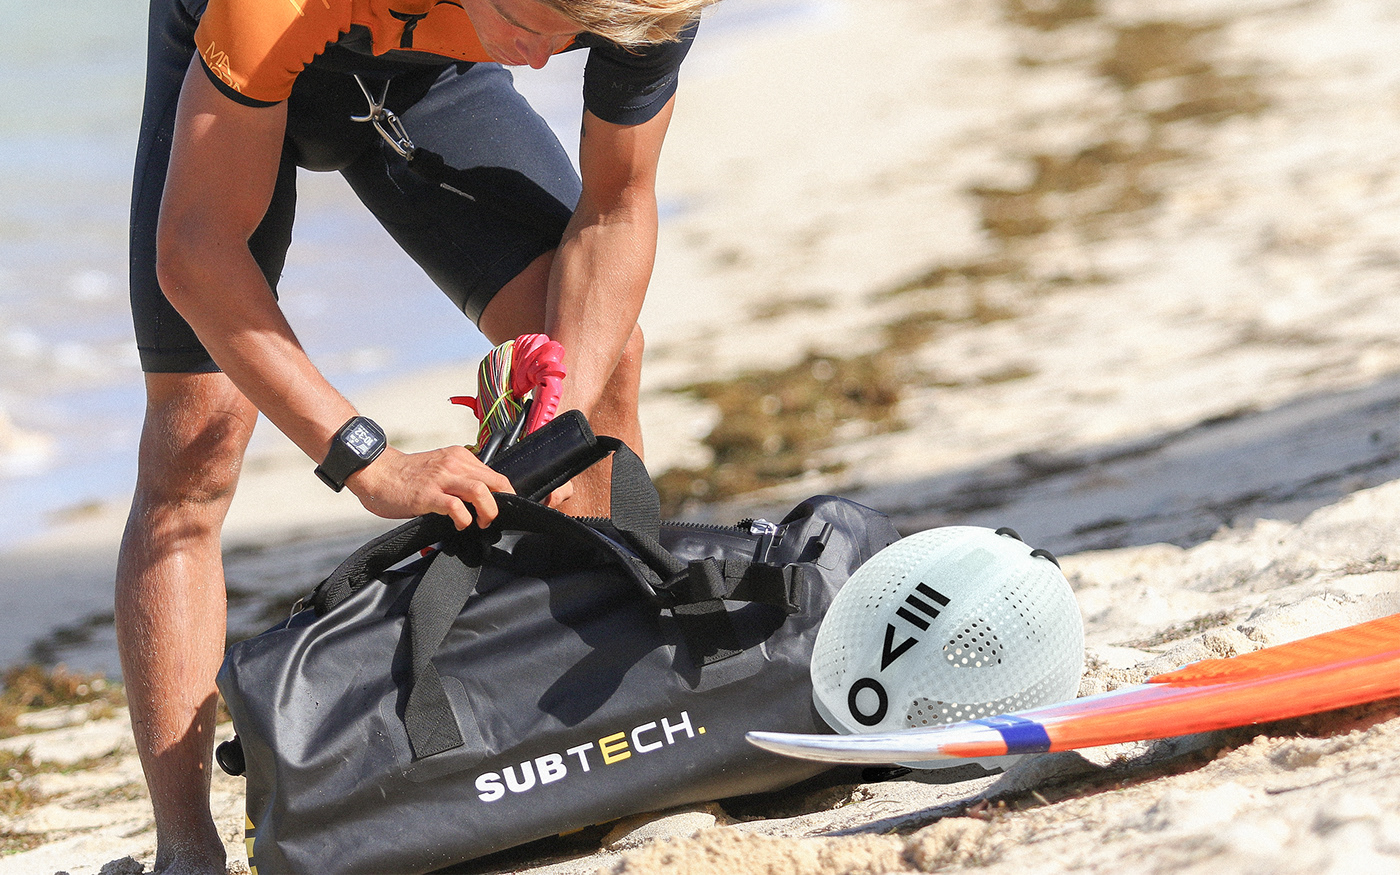  kitesurfing  safety sports productdesign industrialdesign surfing Helmet Evo cmf Watersports